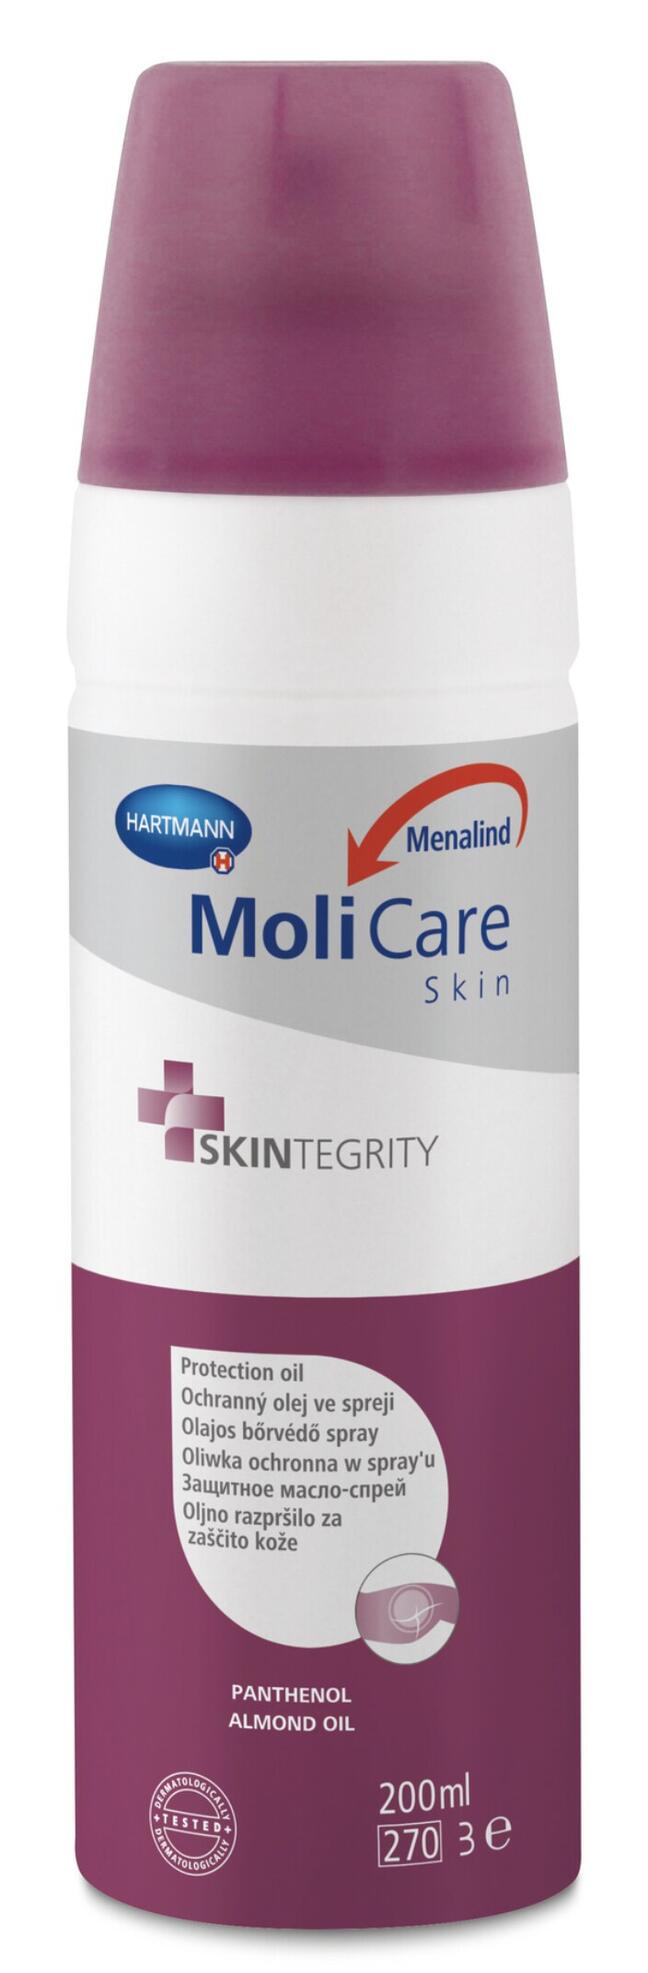 MoliCare ādas aizsargājošs eļļas aerosols